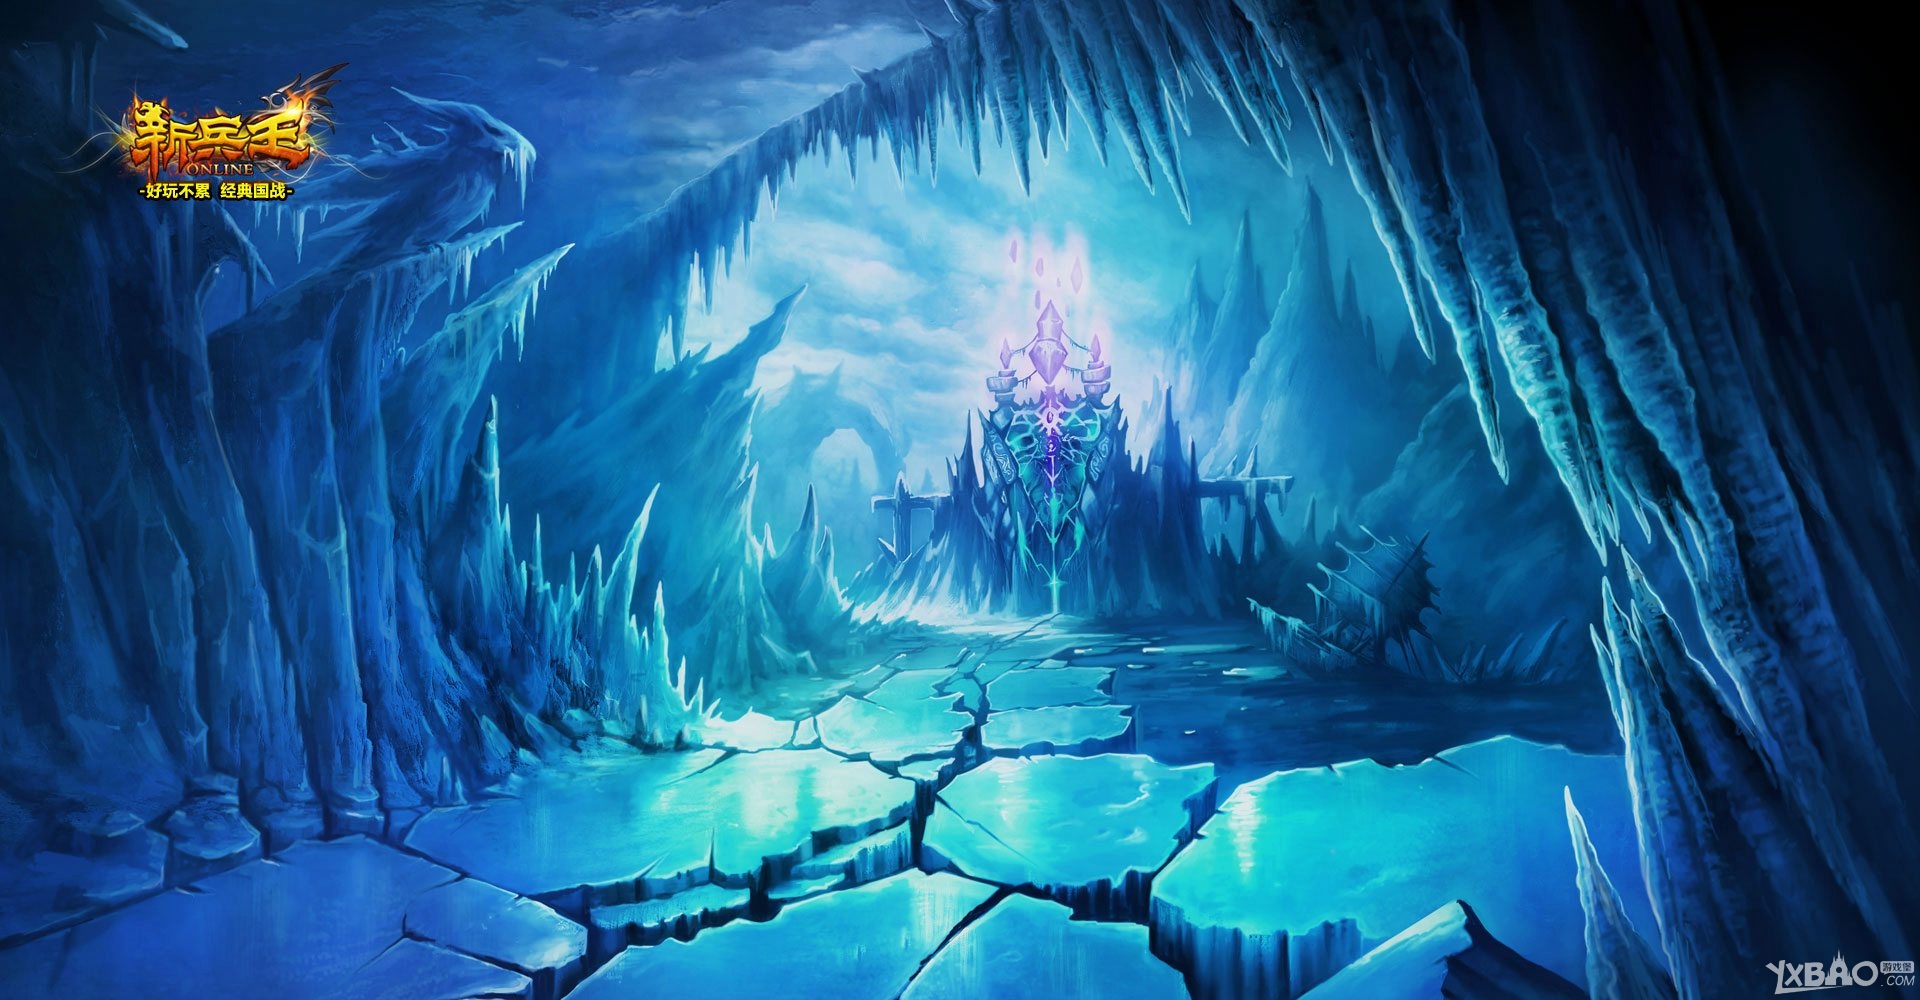 《新兵王》将于12月15日开启首次封测 唯美魔幻朋克风格壁纸曝光